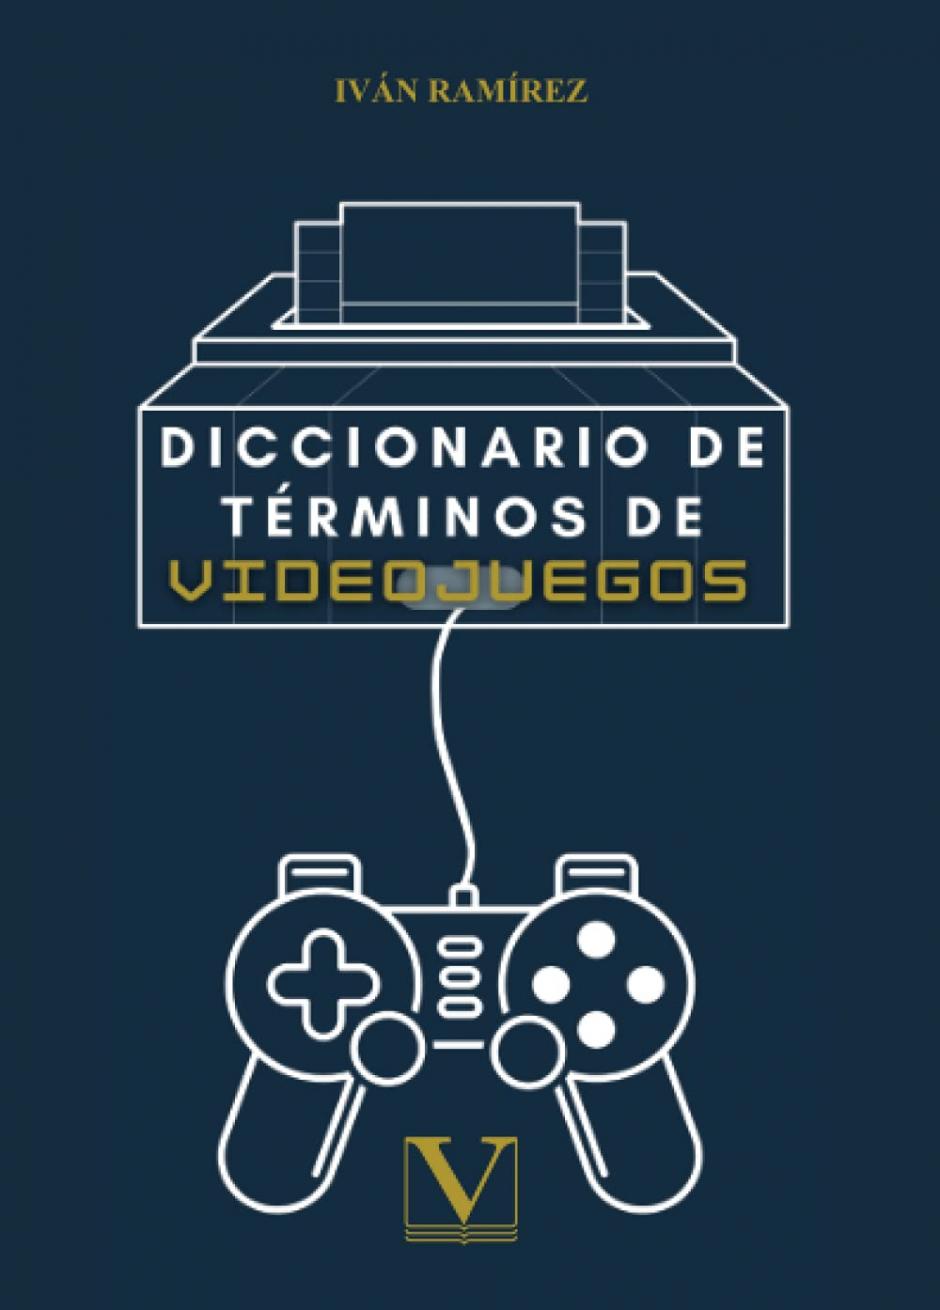 'Diccionario de términos de videojuegos', de Iván Ramírez